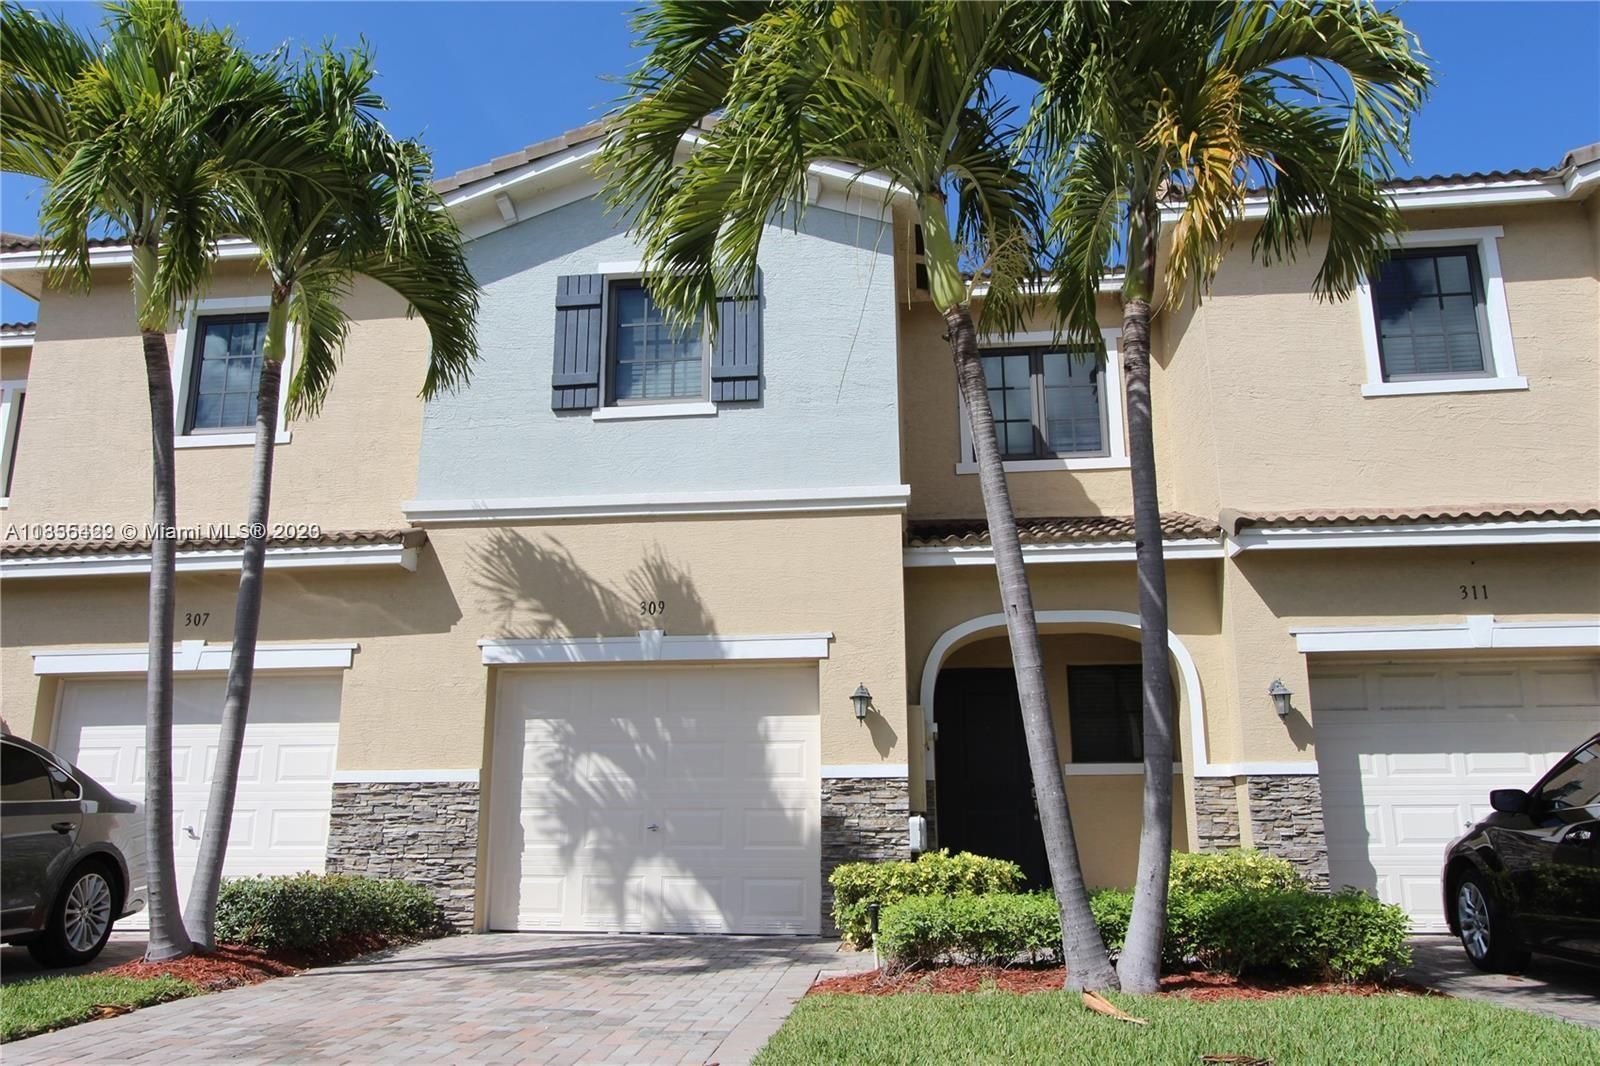 Real estate property located at 309 194 Ln, Miami-Dade County, Miami, FL